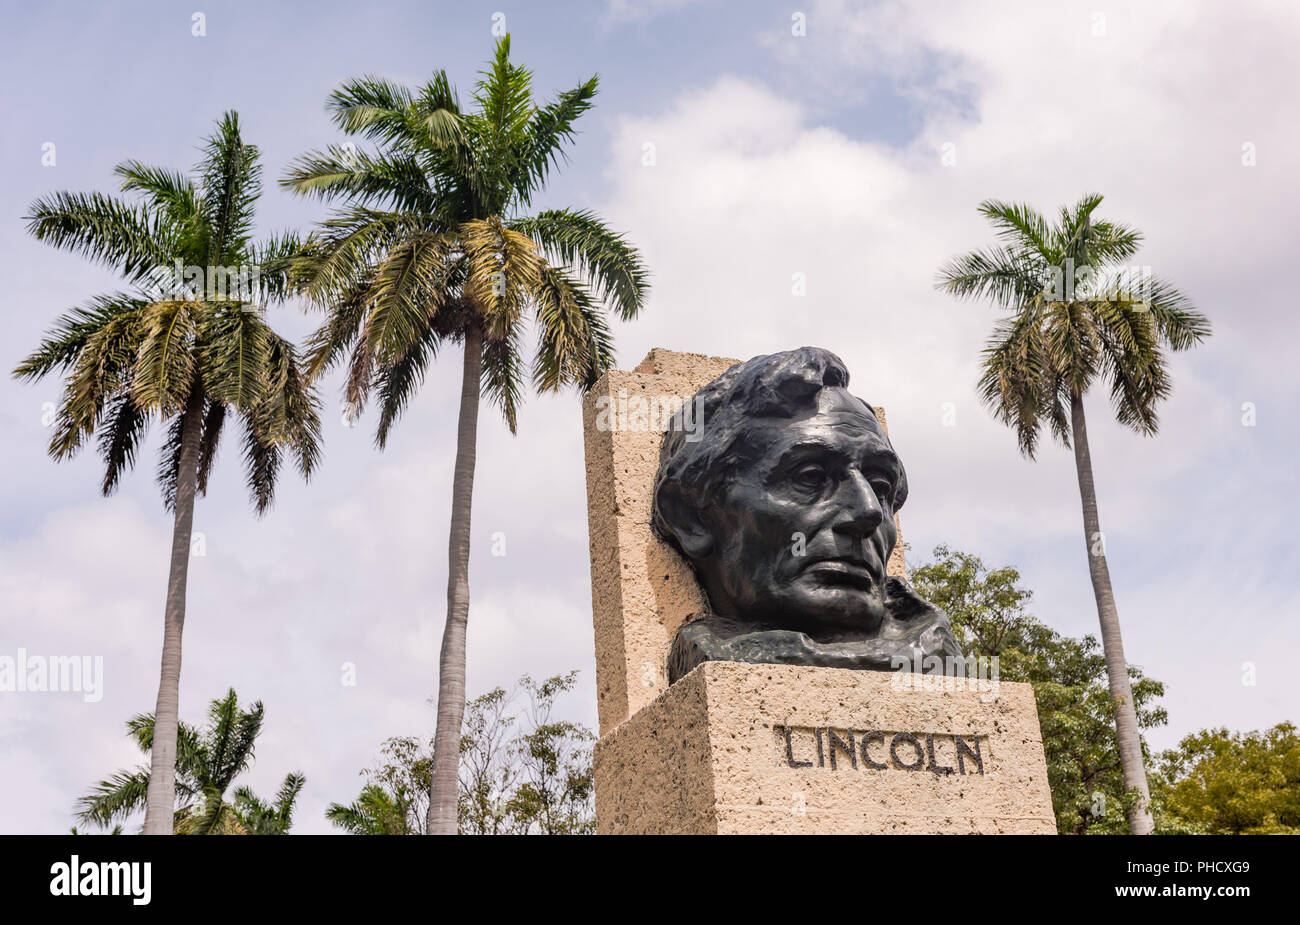 Busto de Abraham Lincoln en La Habana, Cuba. La estatua está situada en el Parque de la Fraternidad Panamericana, símbolo de la relación entre Estados Unidos y Cuba desde 1927. Foto de stock